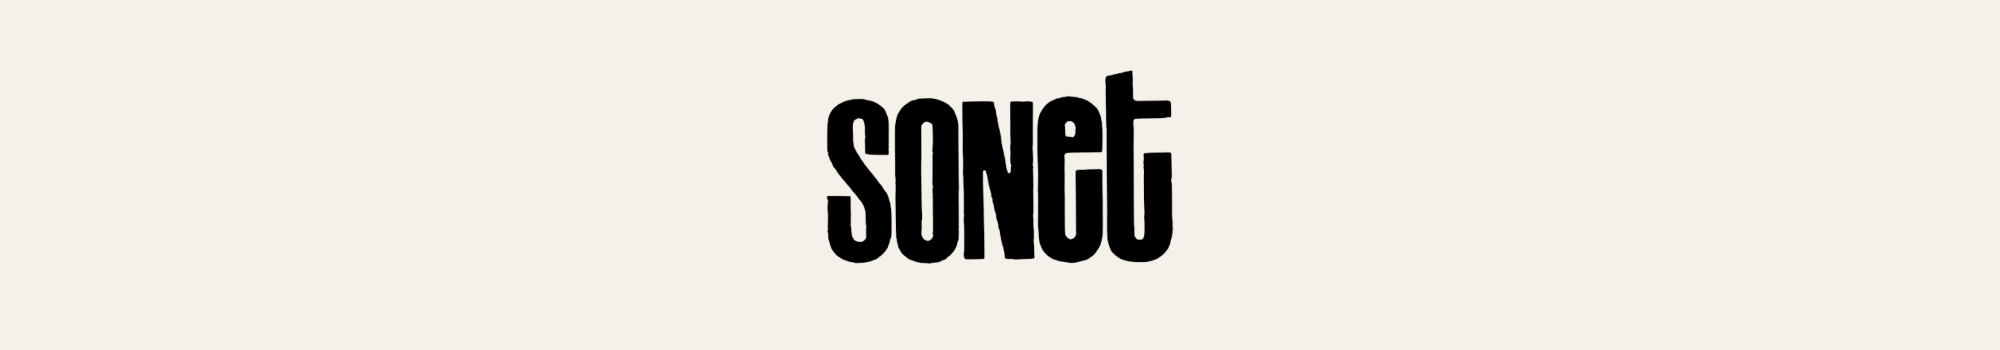 Sonet Records logotyp